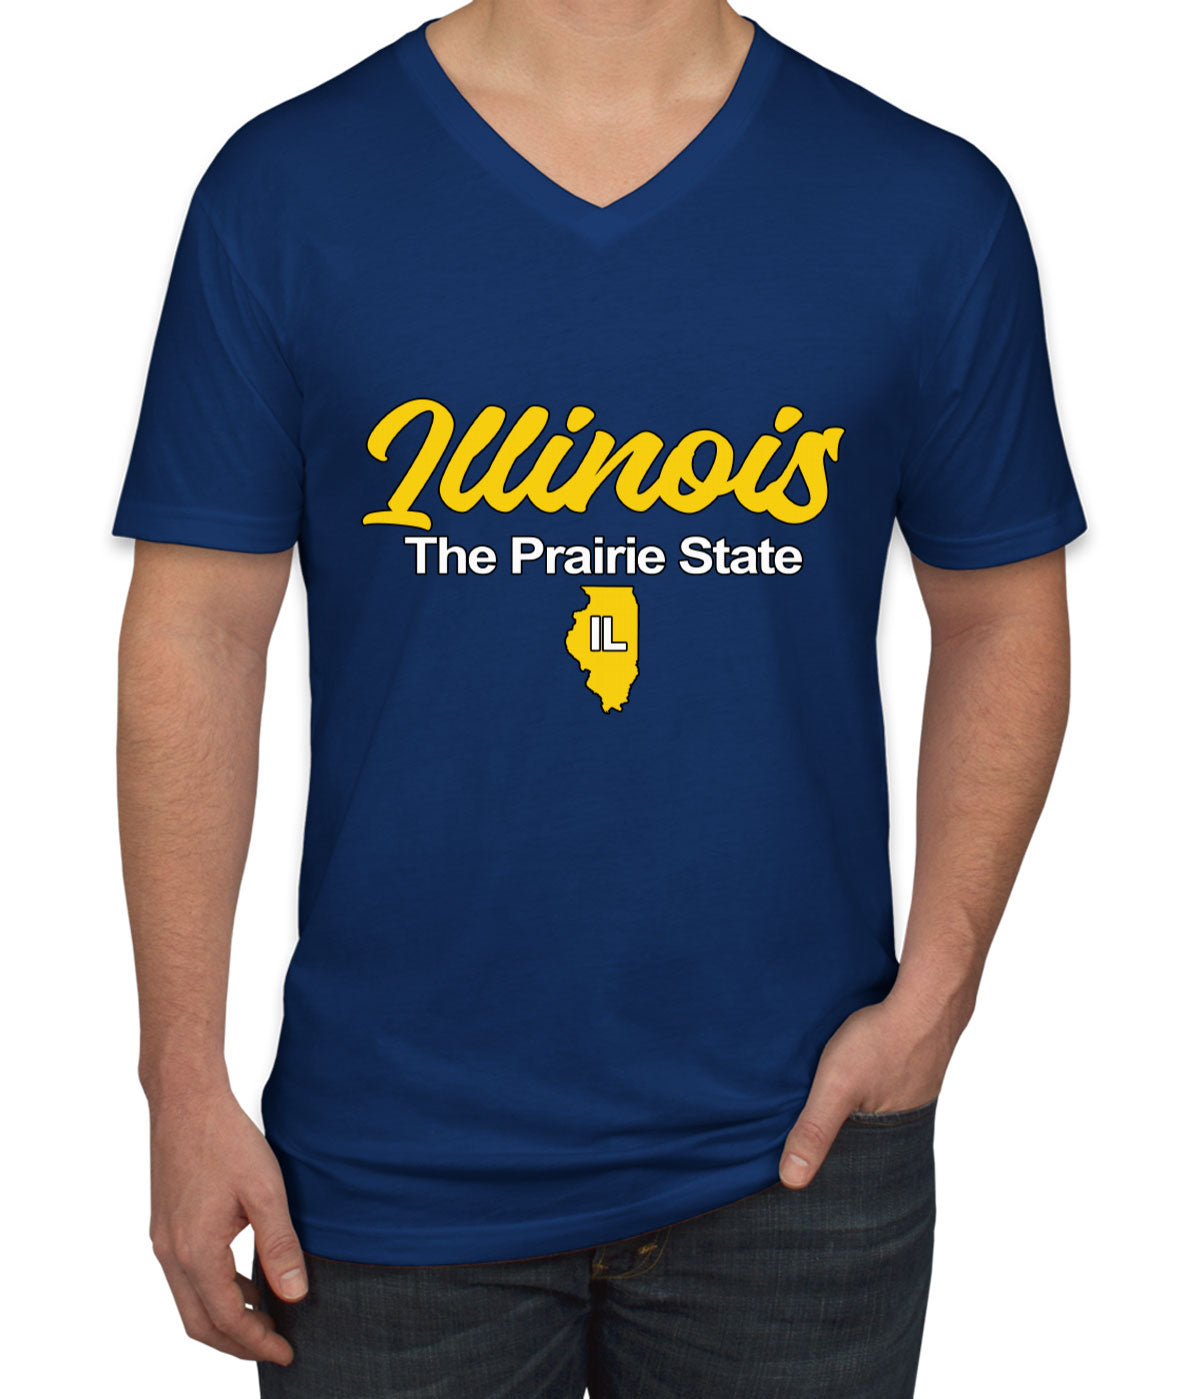 Illinois The Prairie State Men's V Neck T-shirt